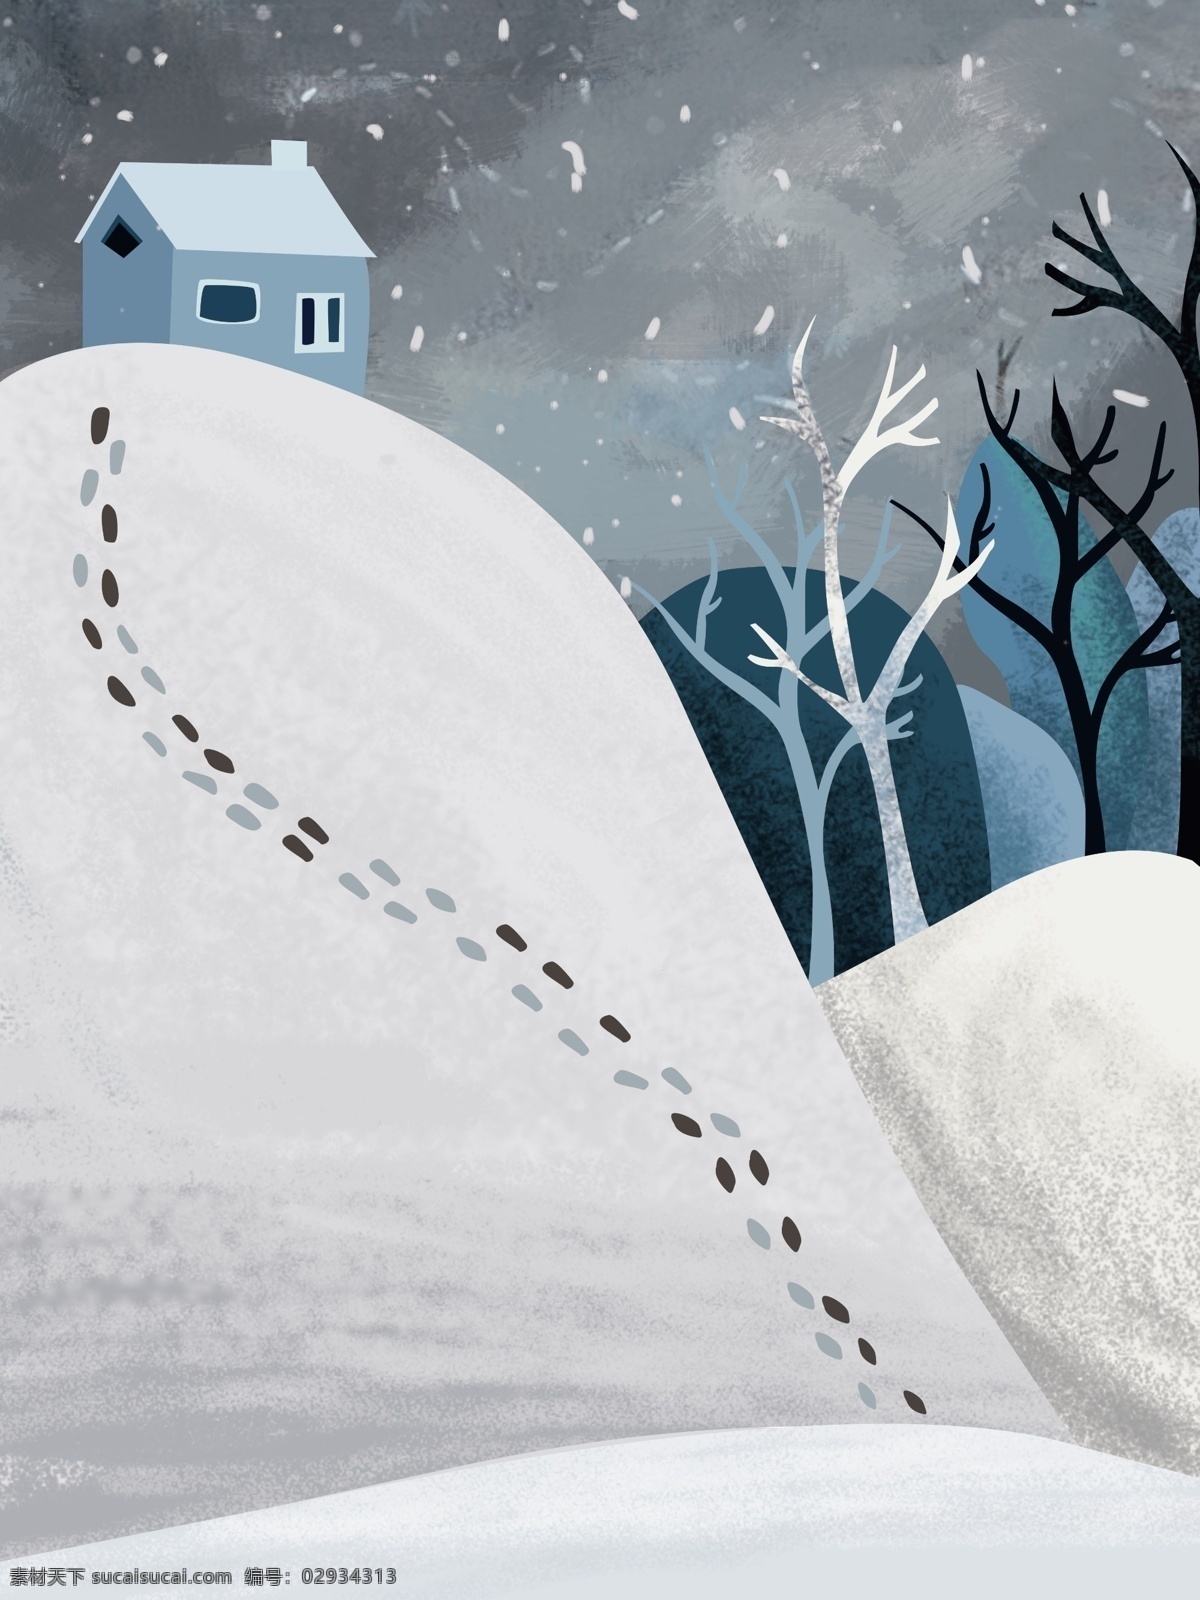 创意 冬天 里 脚印 冬季 背景 树木 背景素材 雪地 冬天快乐 雪人 冬天早晨 广告背景素材